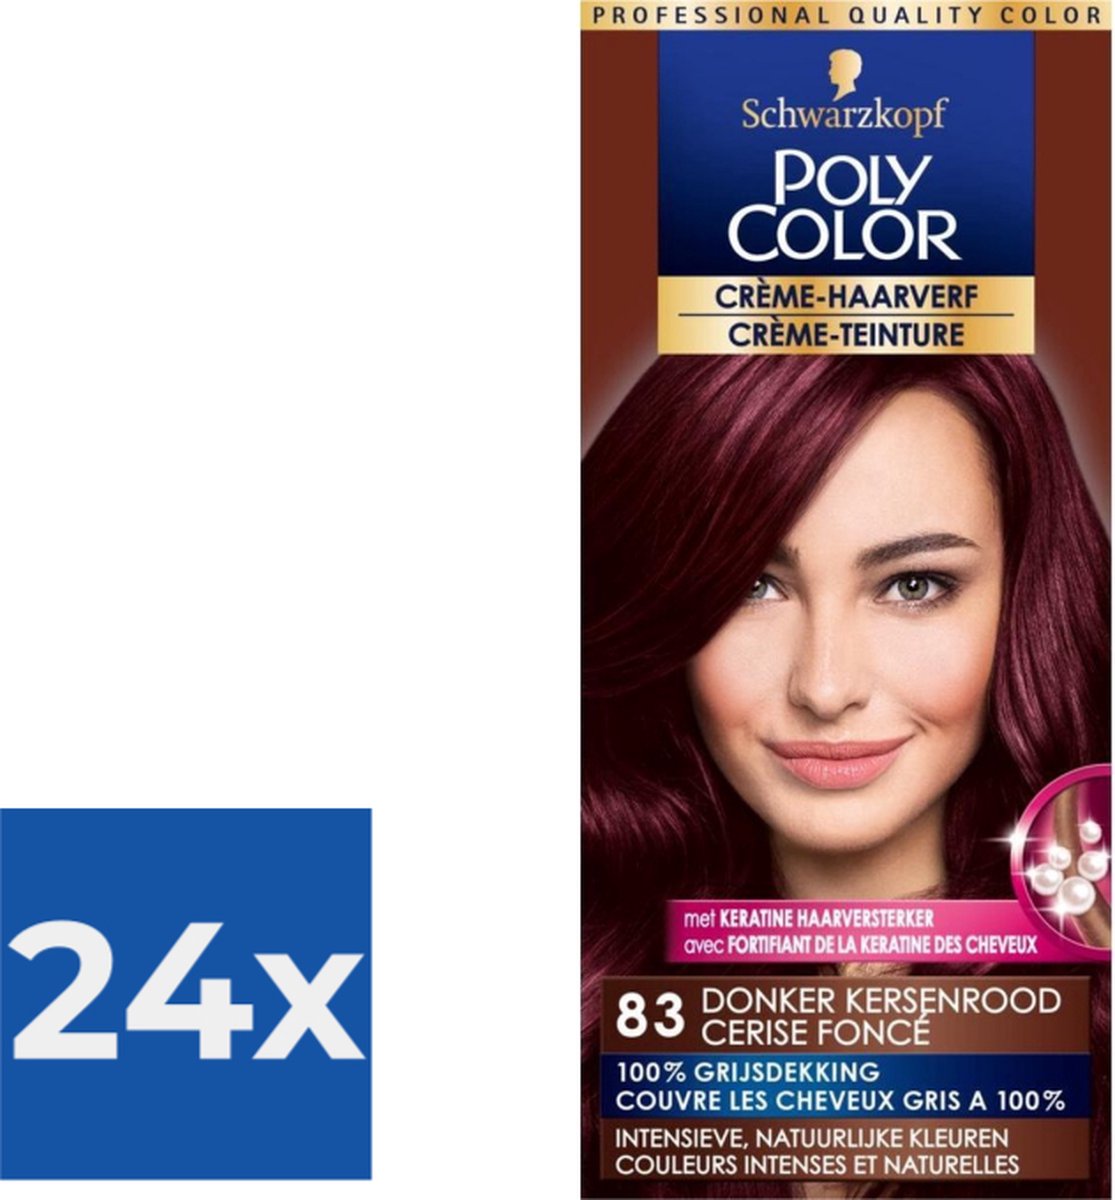 Poly Color Creme Haarverf 83 - Donker Kersenrood - 1 stuk - Voordeelverpakking 24 stuks